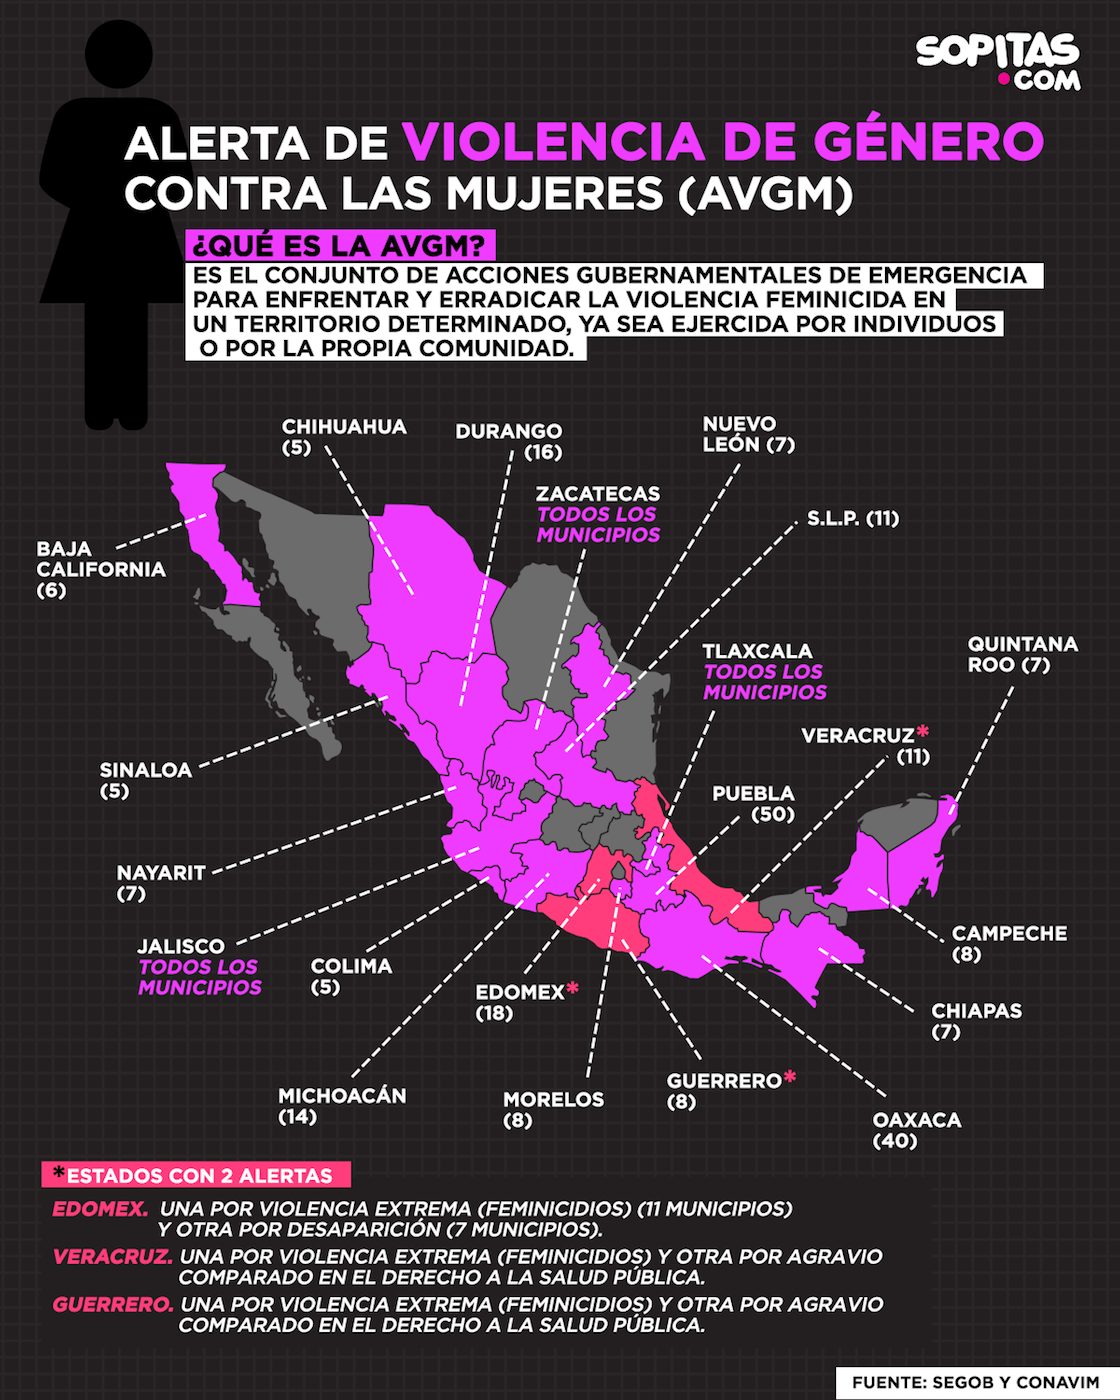 Mujeres tapizan con rostros de presuntos feminicidas el Zócalo de Veracruz